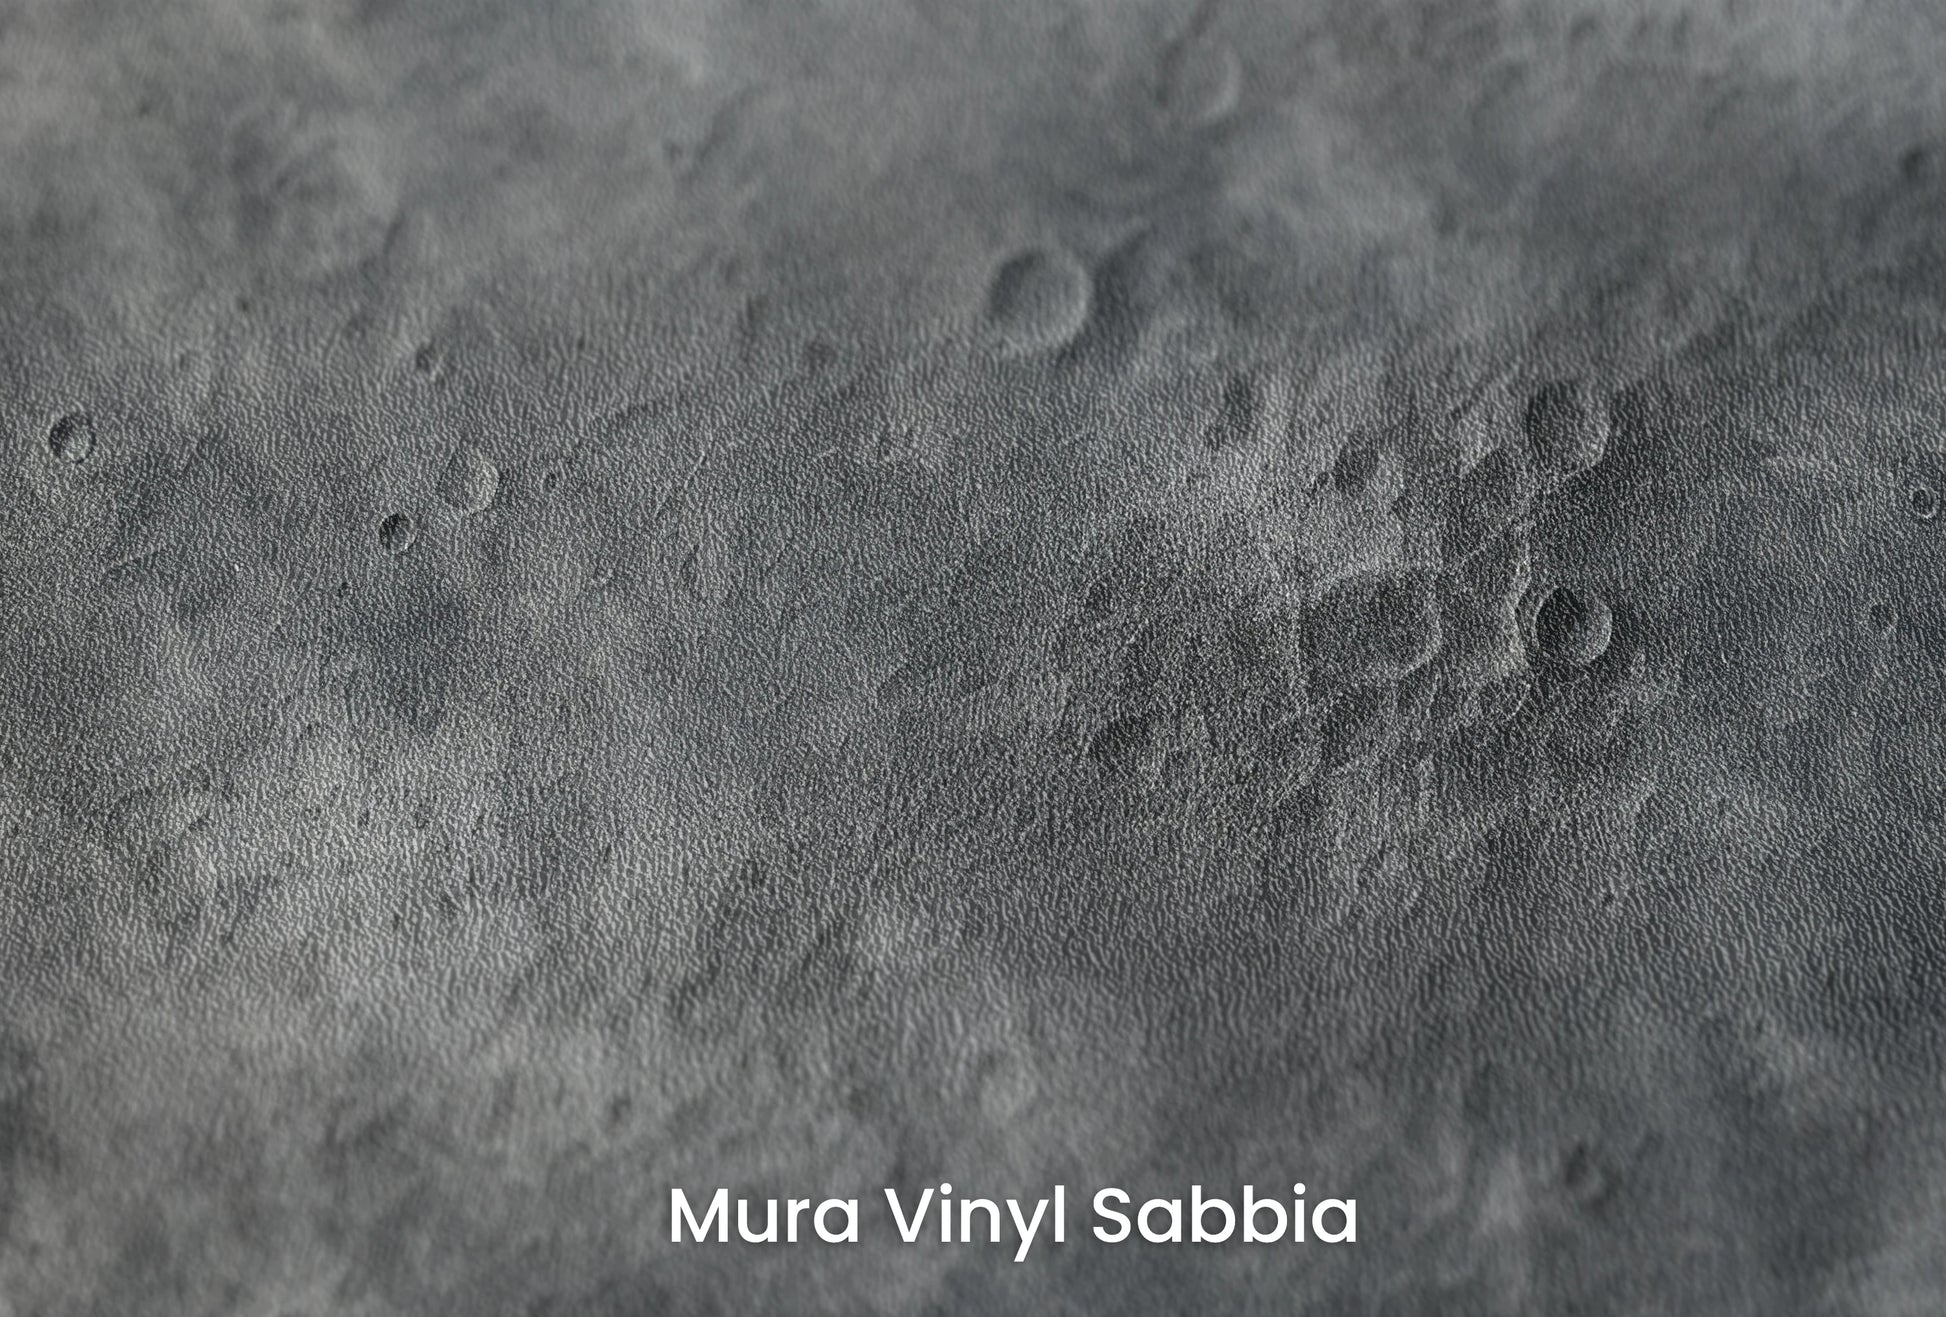 Zbliżenie na artystyczną fototapetę o nazwie Planetary Rise na podłożu Mura Vinyl Sabbia struktura grubego ziarna piasku.